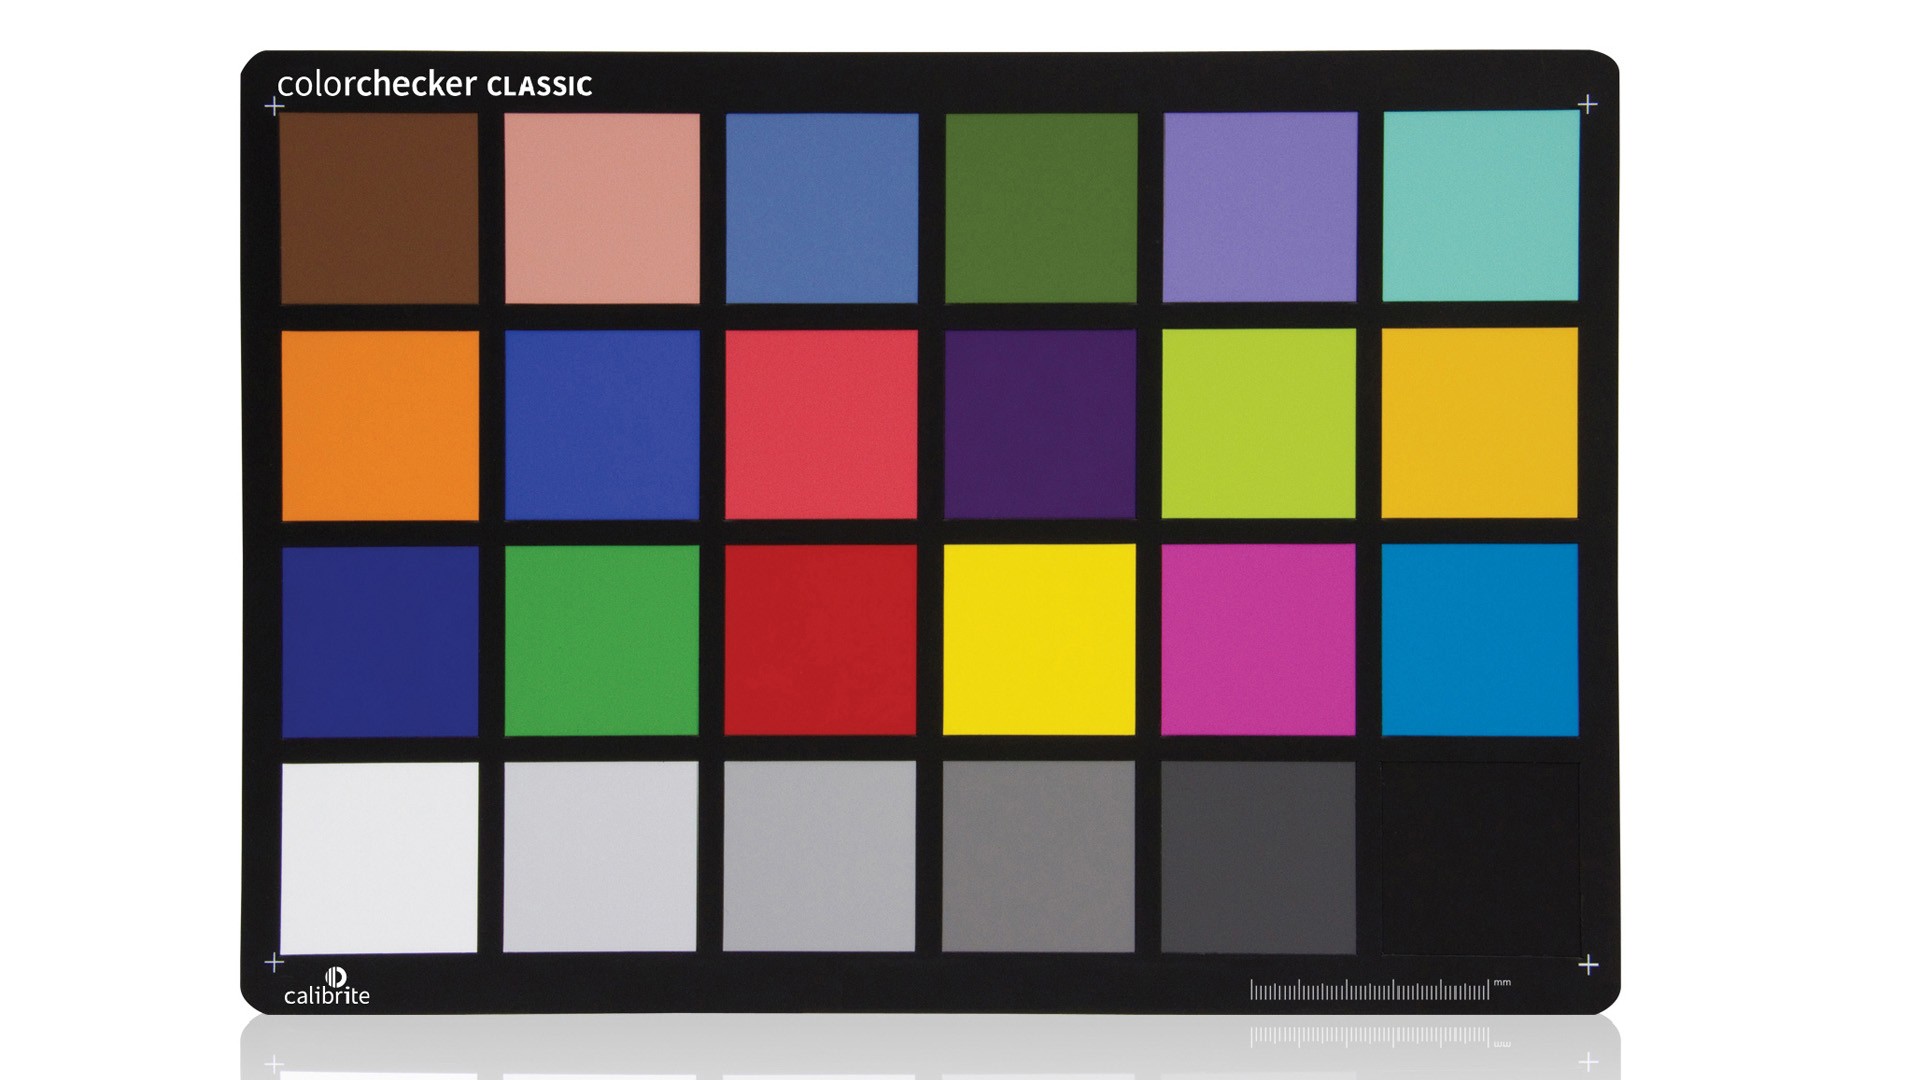 Calibrarea culorii / Profilare - Calibrite ColorChecker Classic, transilvae.ro